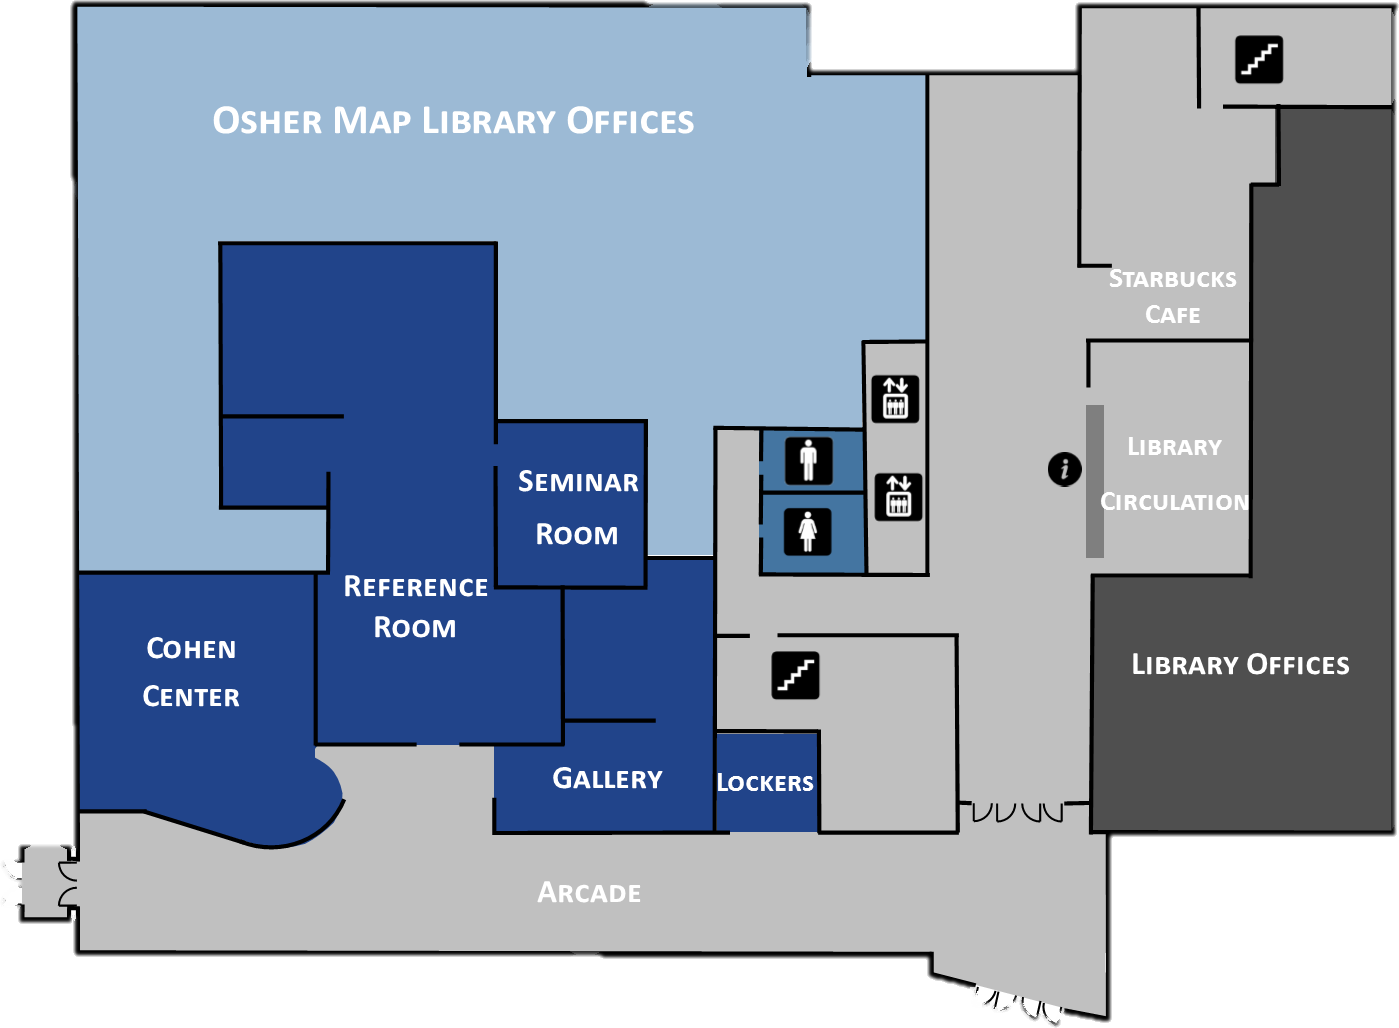 Maps library. Карта библиотеки. Карта библиотеки в Doors. Карта библиотеки дурс. Library location карта.